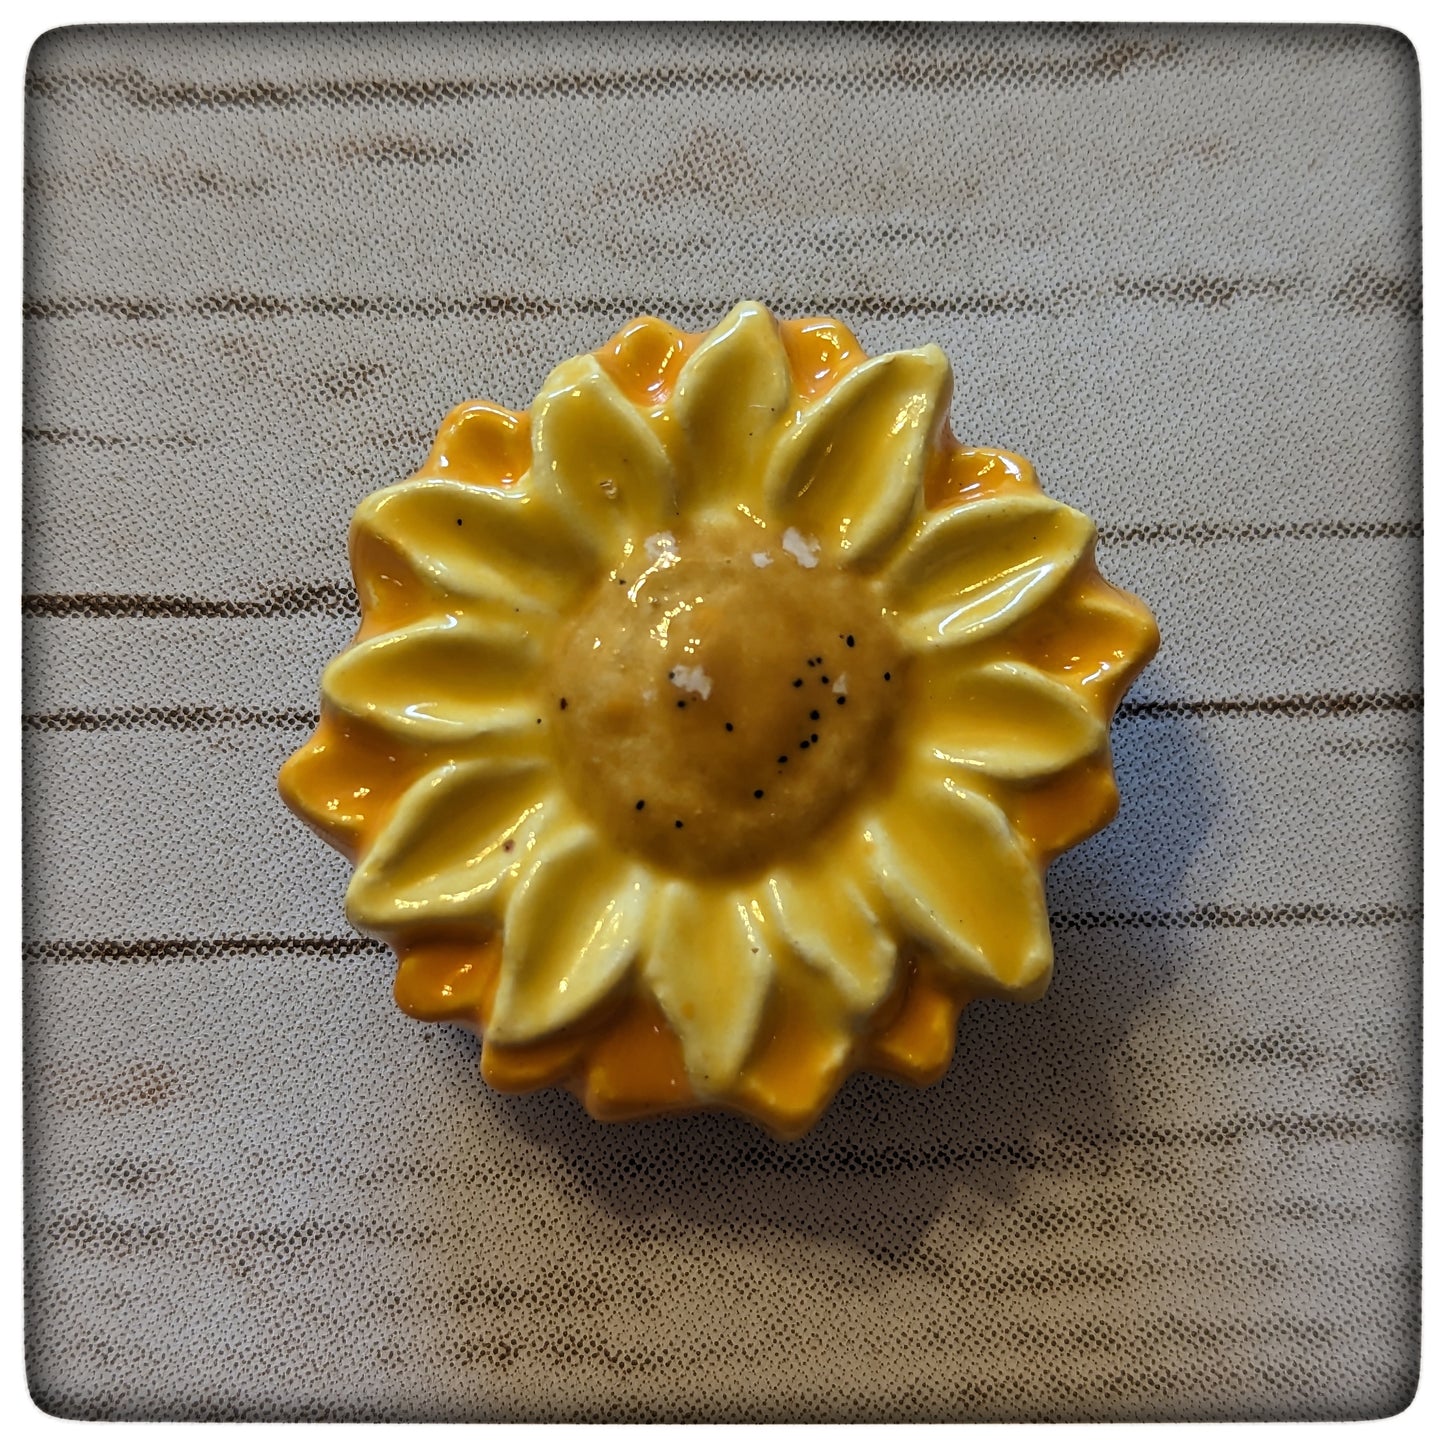 Sunflower magnet